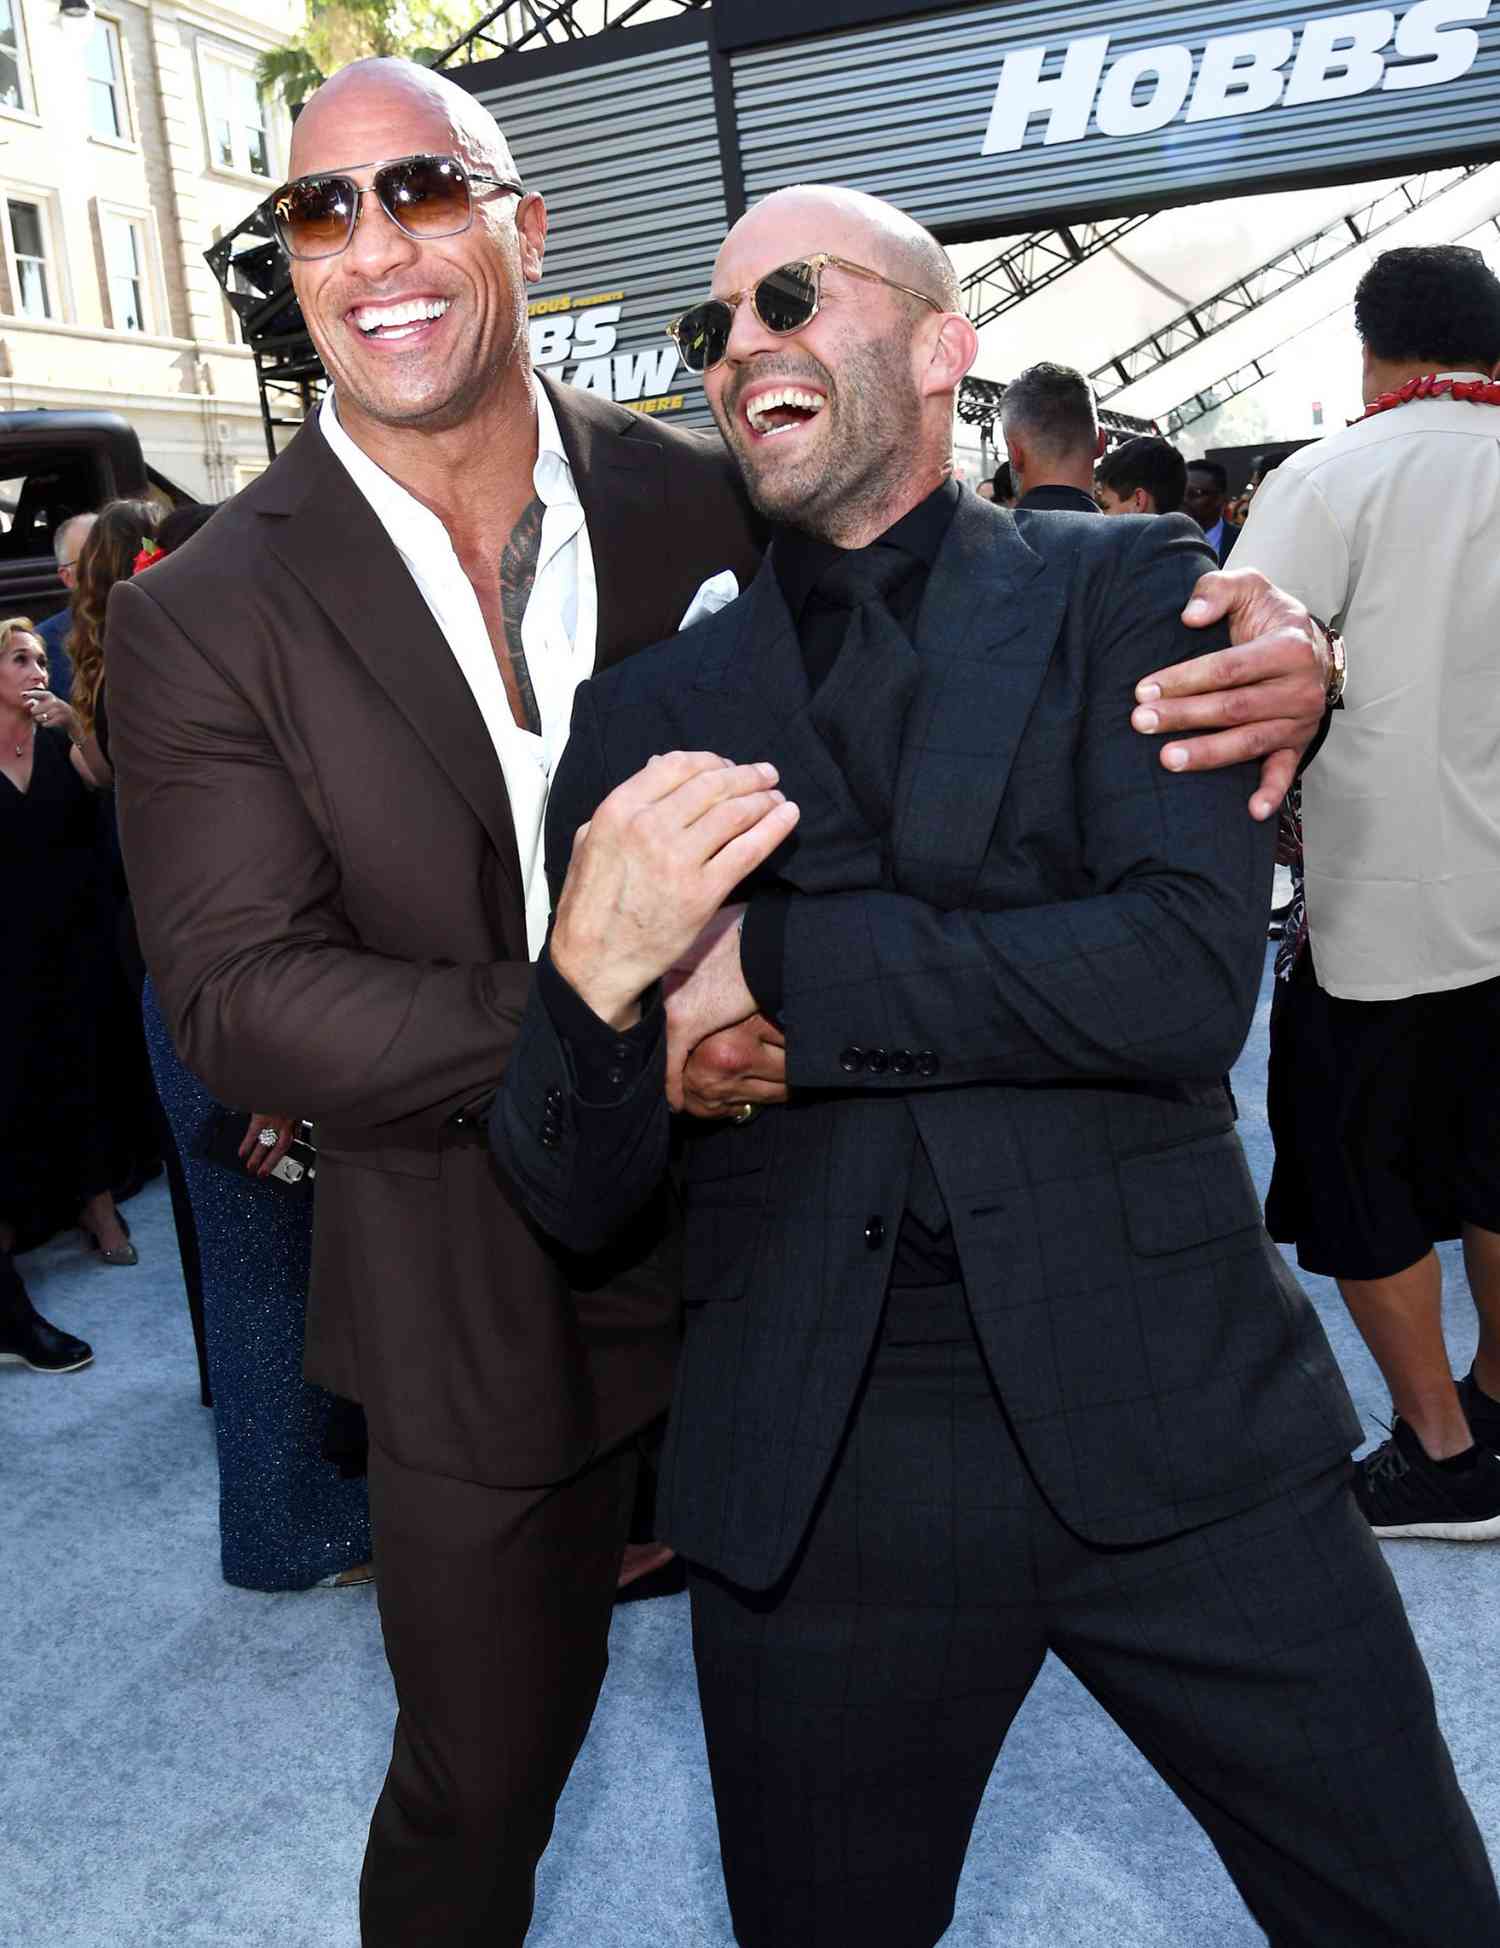 Dwayne Johnson and Jason Statham